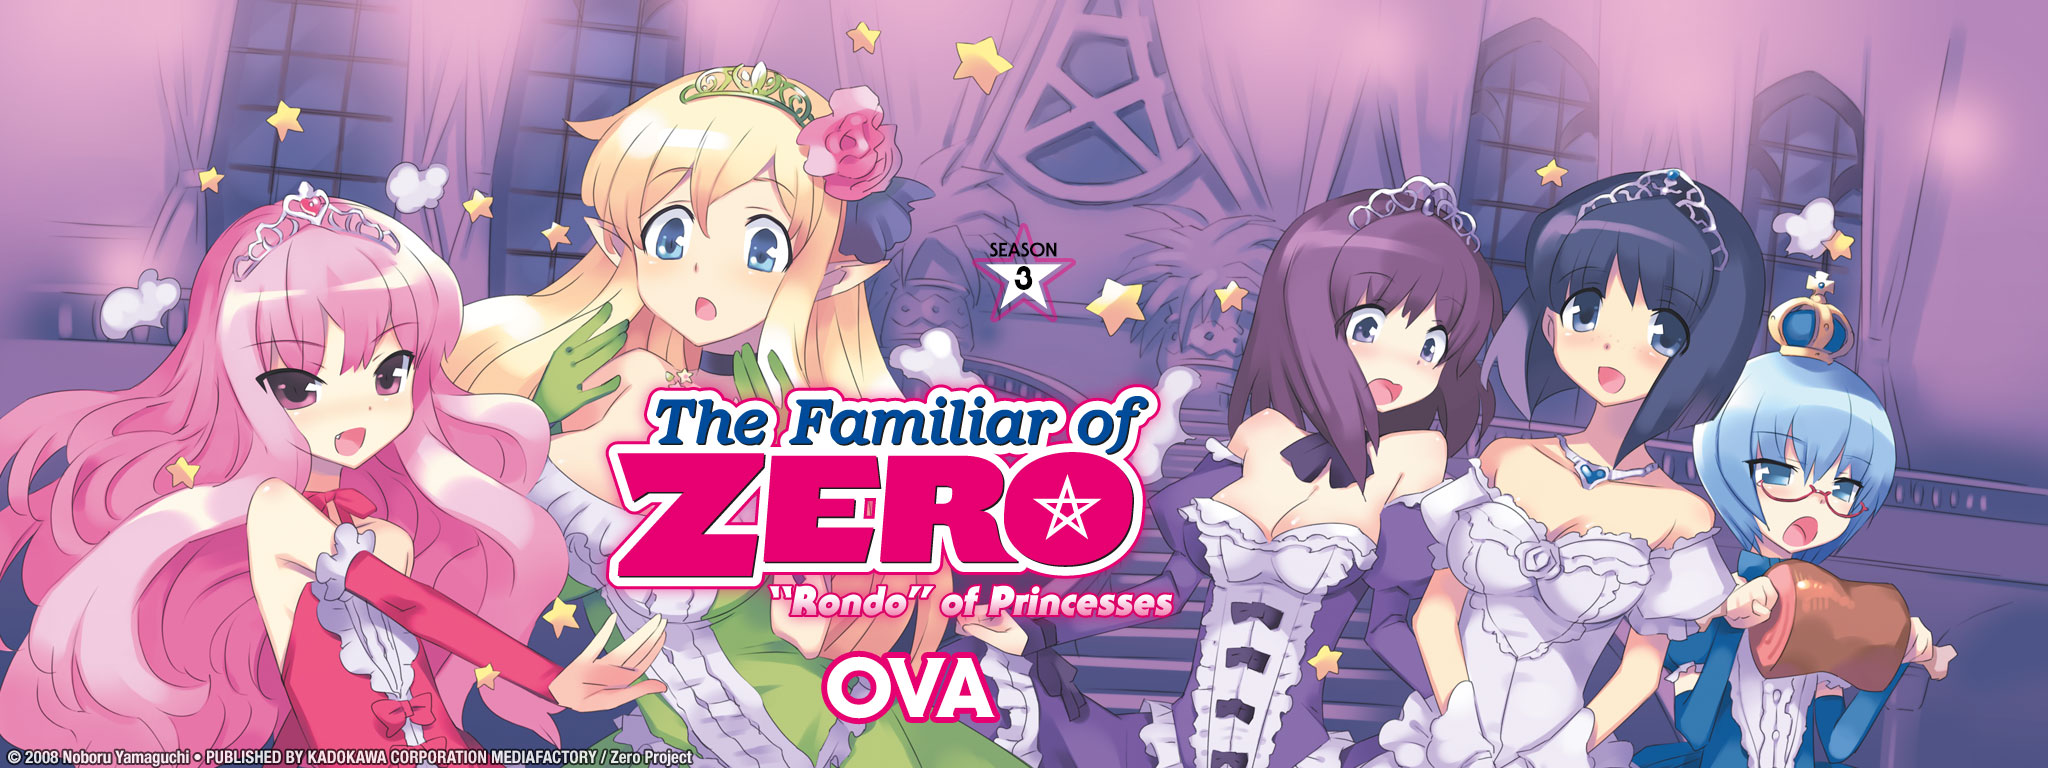 Title Art for The Familiar of Zero: "Rondo" of Princesses OVA